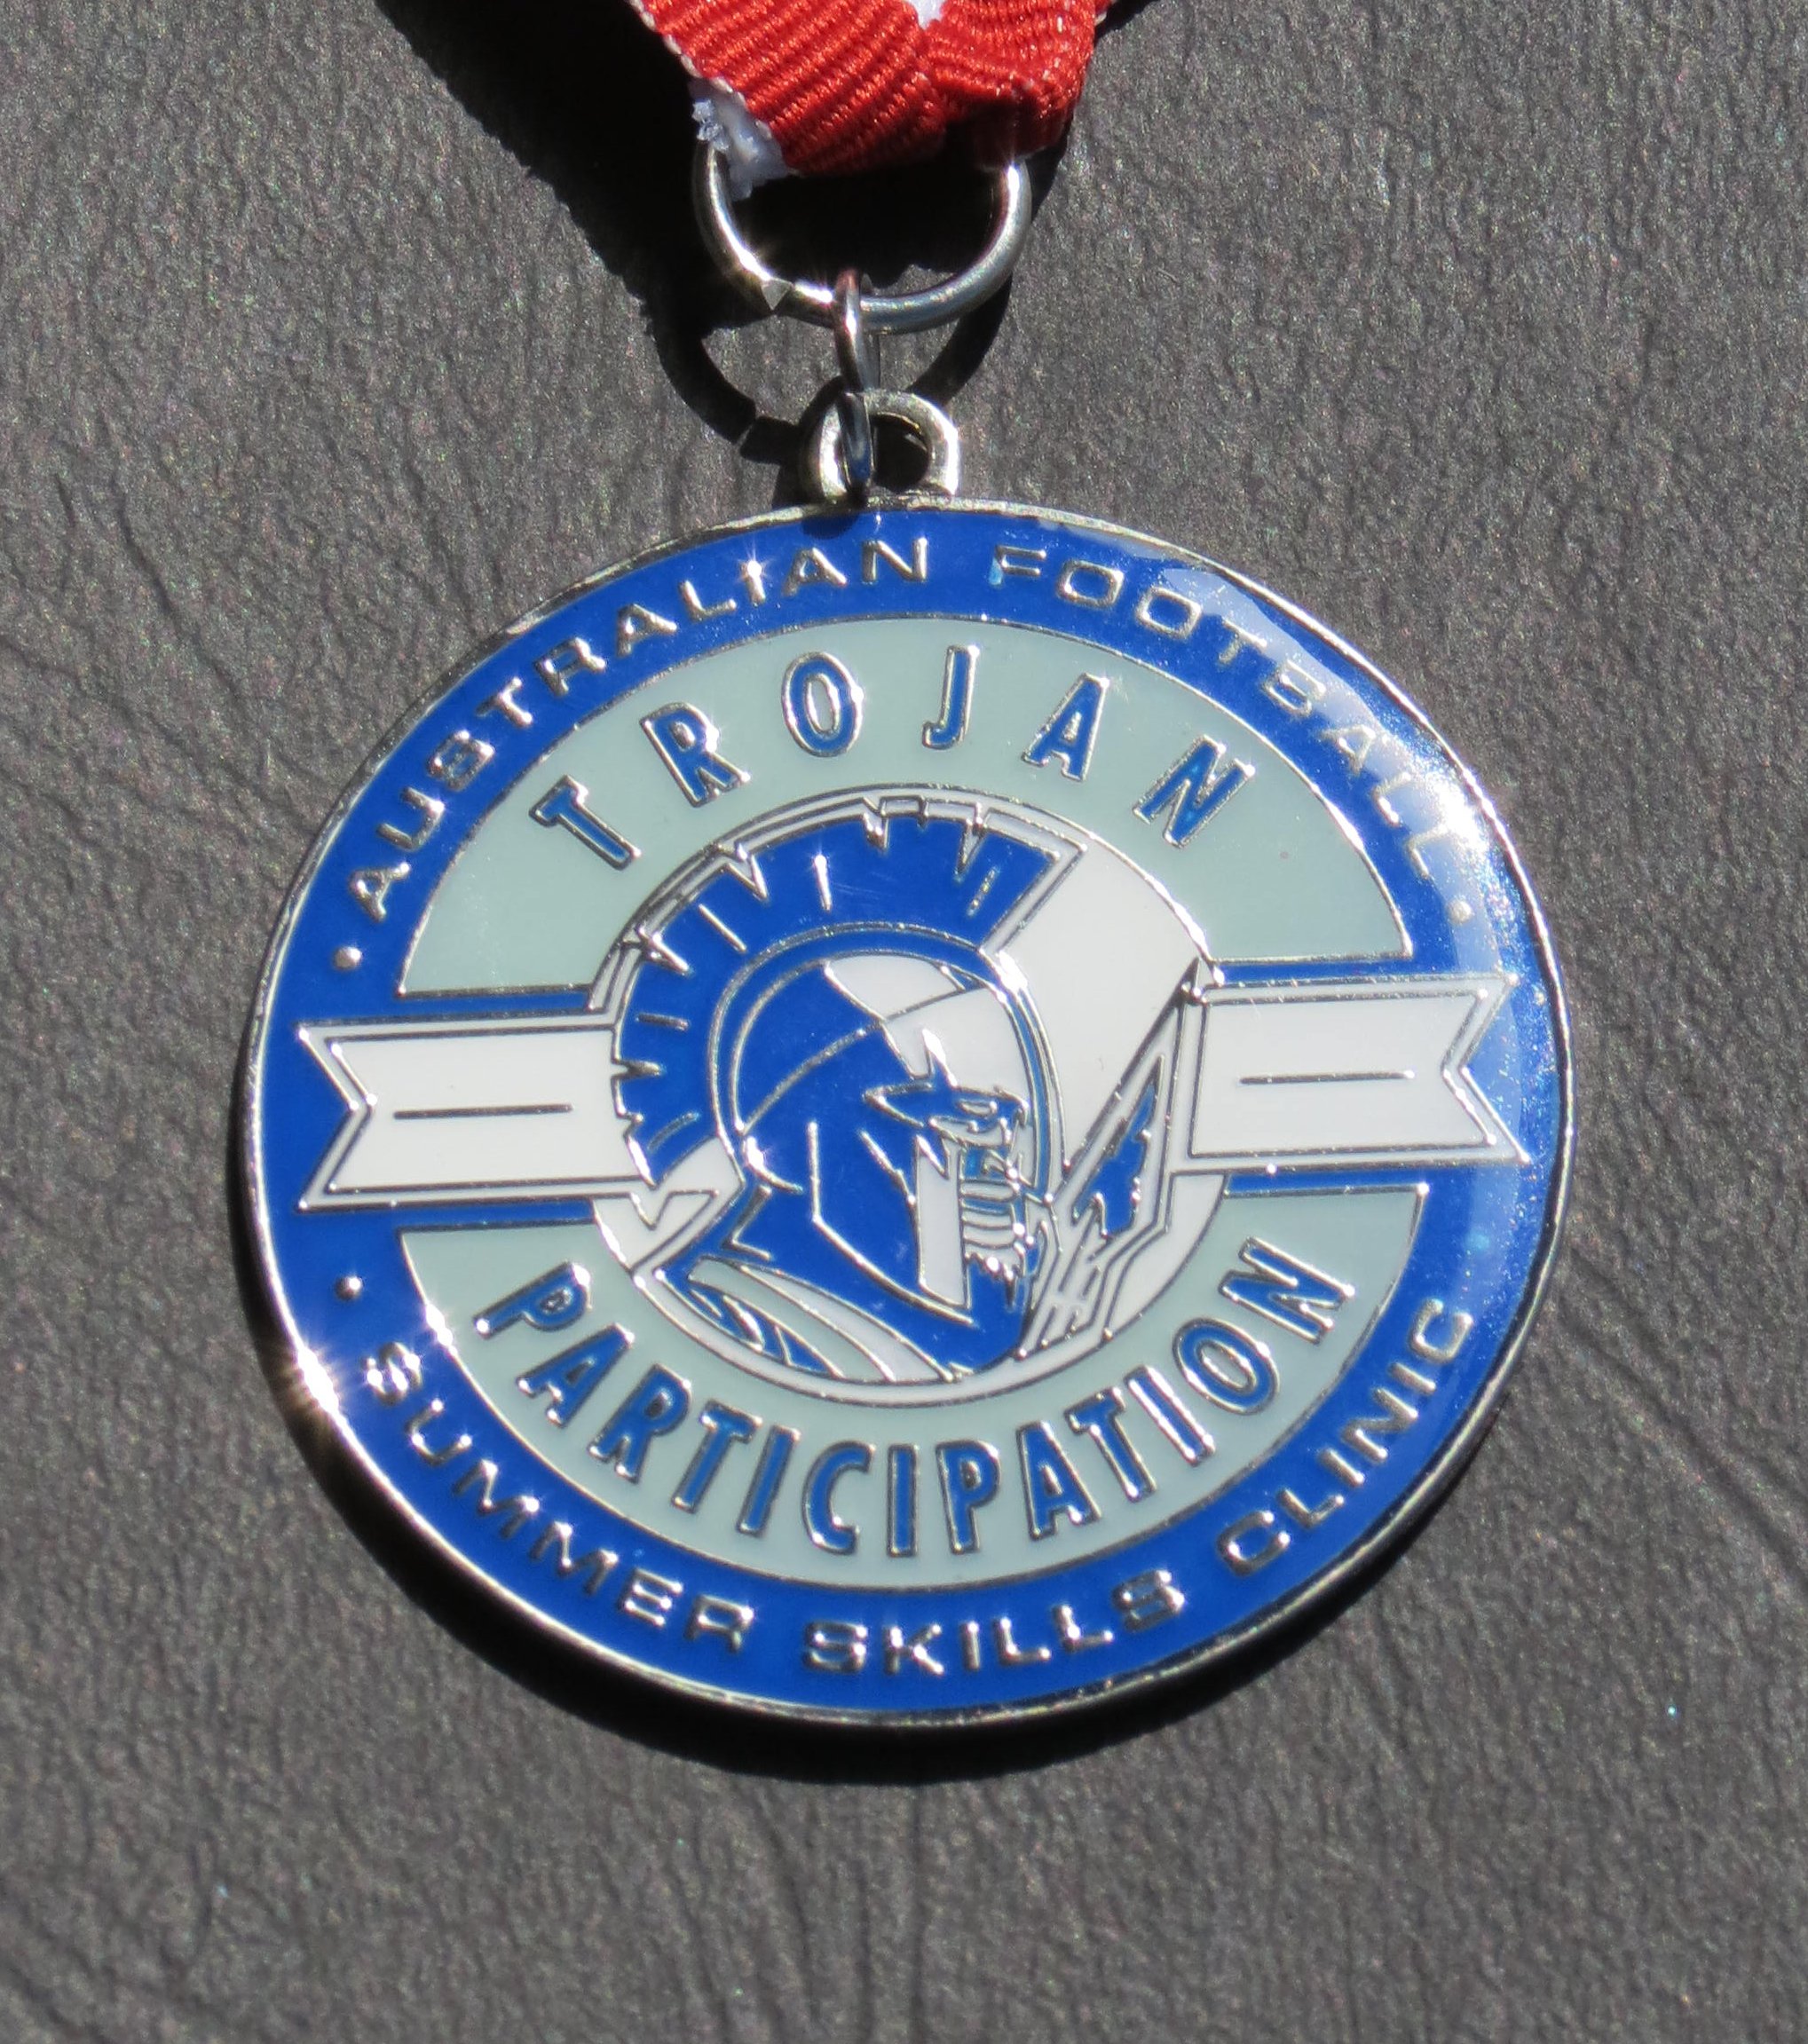 Participation Medal